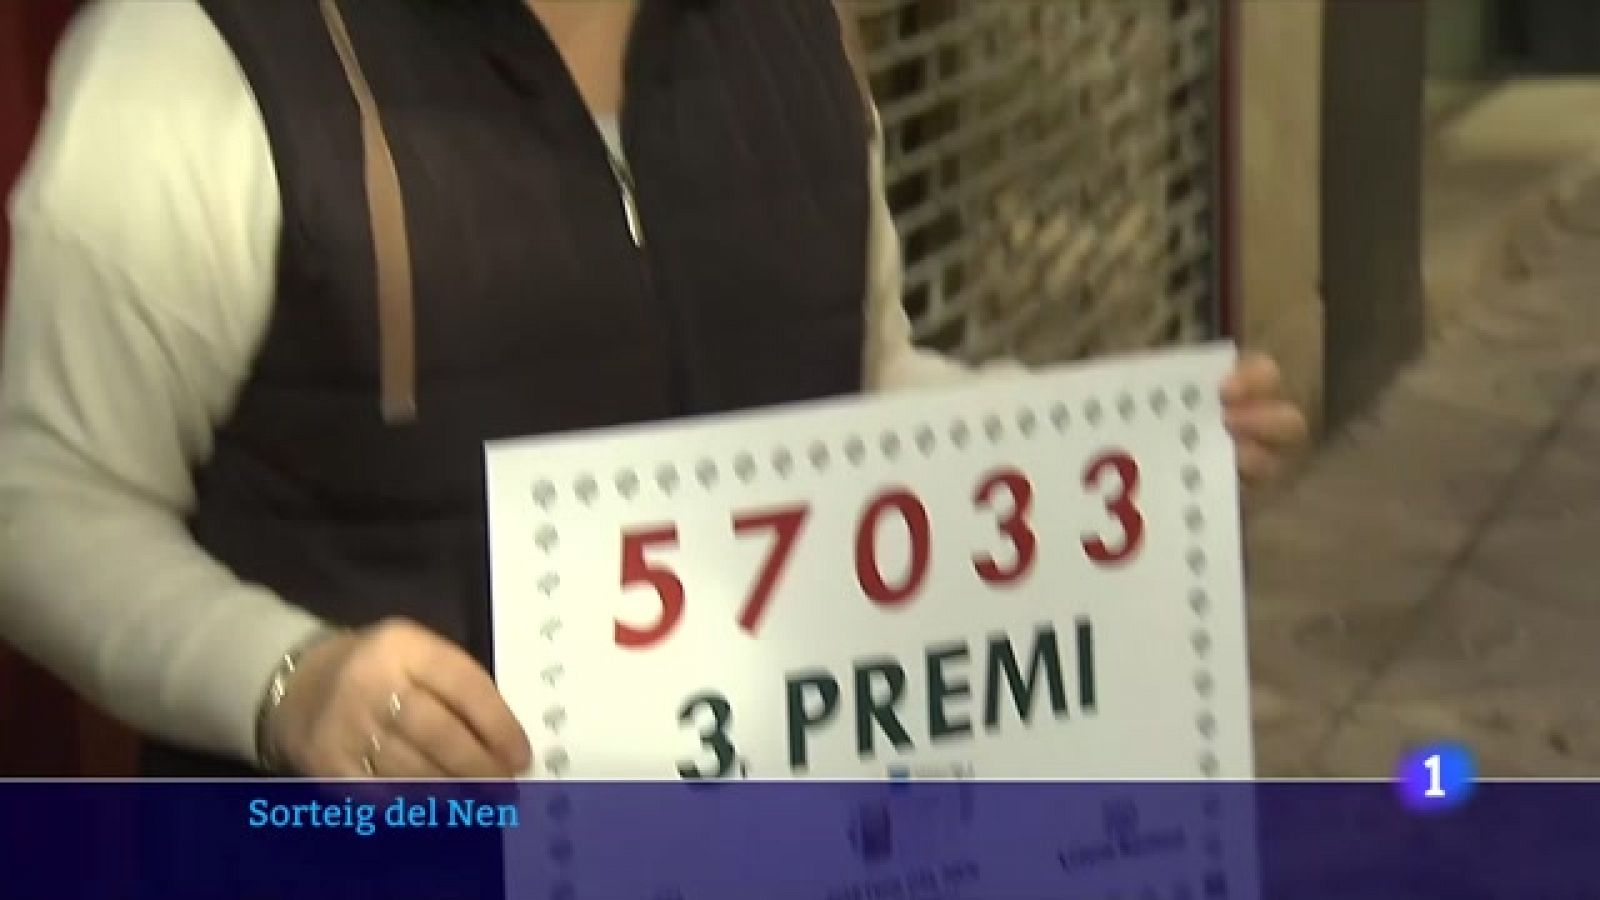 La Loteria del Nen somriu diversos municipis catalans amb el primer i tercer premi